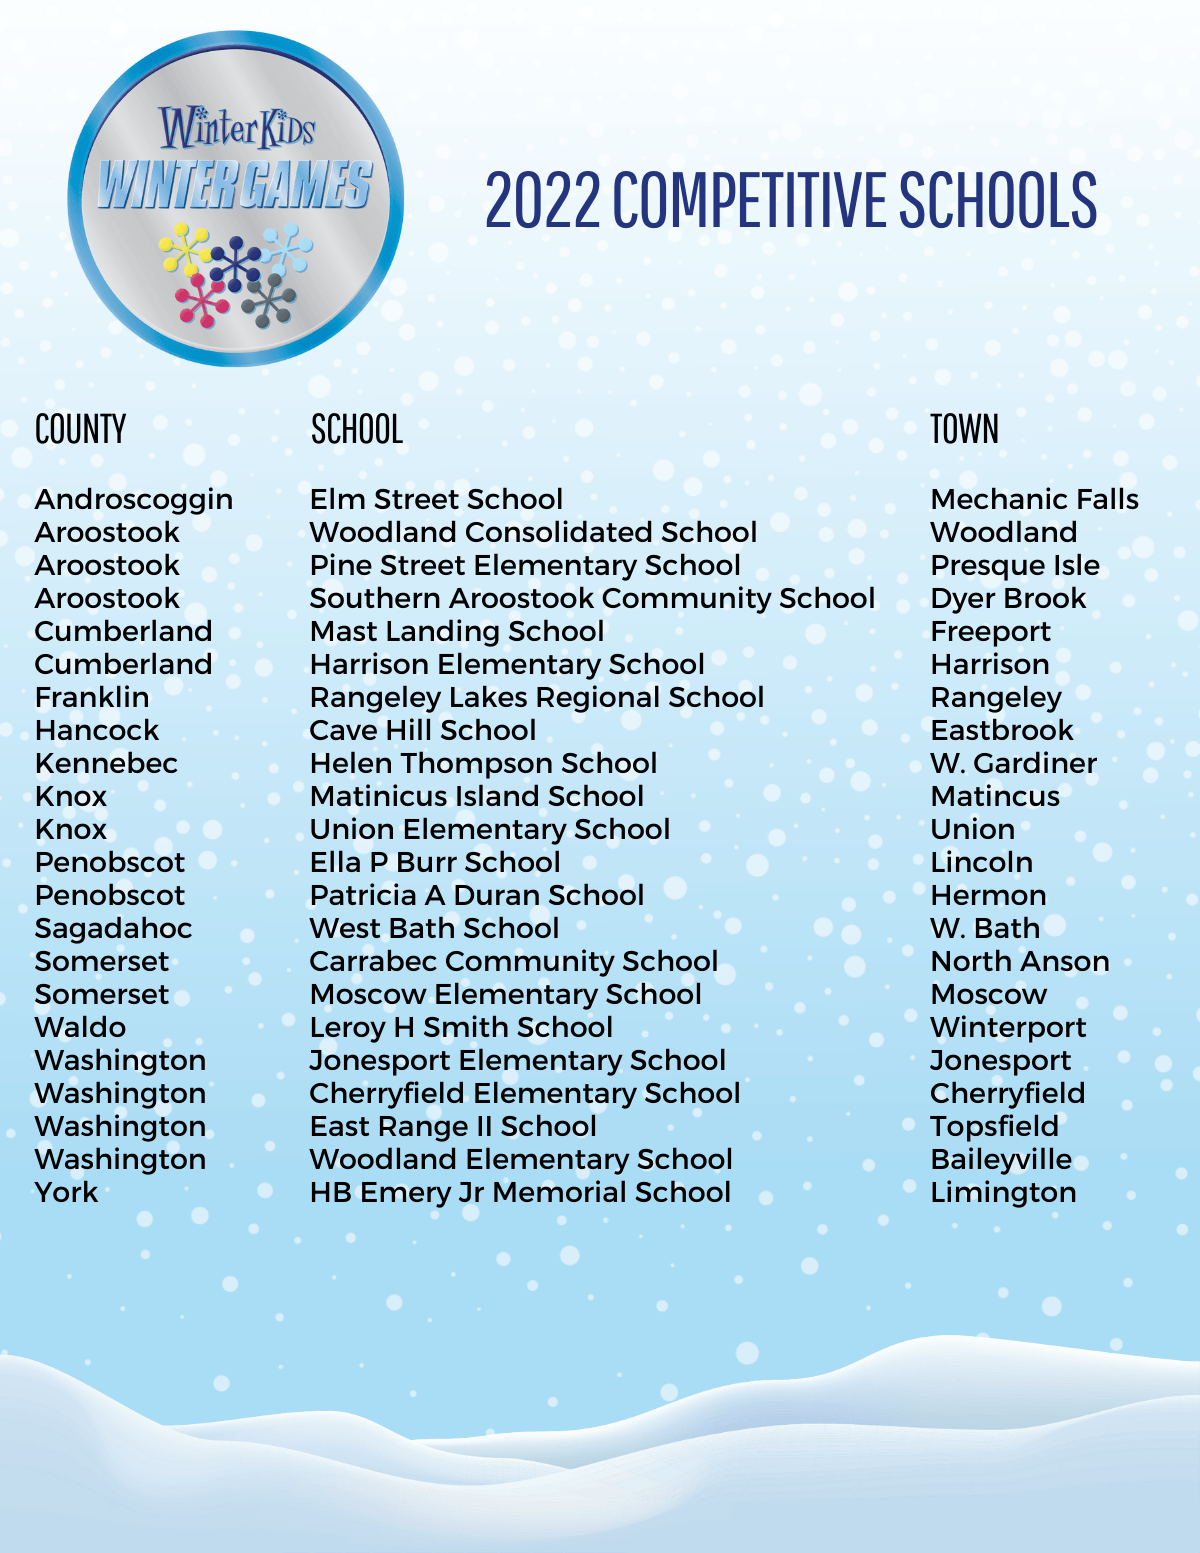 WinterKids Winter Games 2022 Competitive Schools